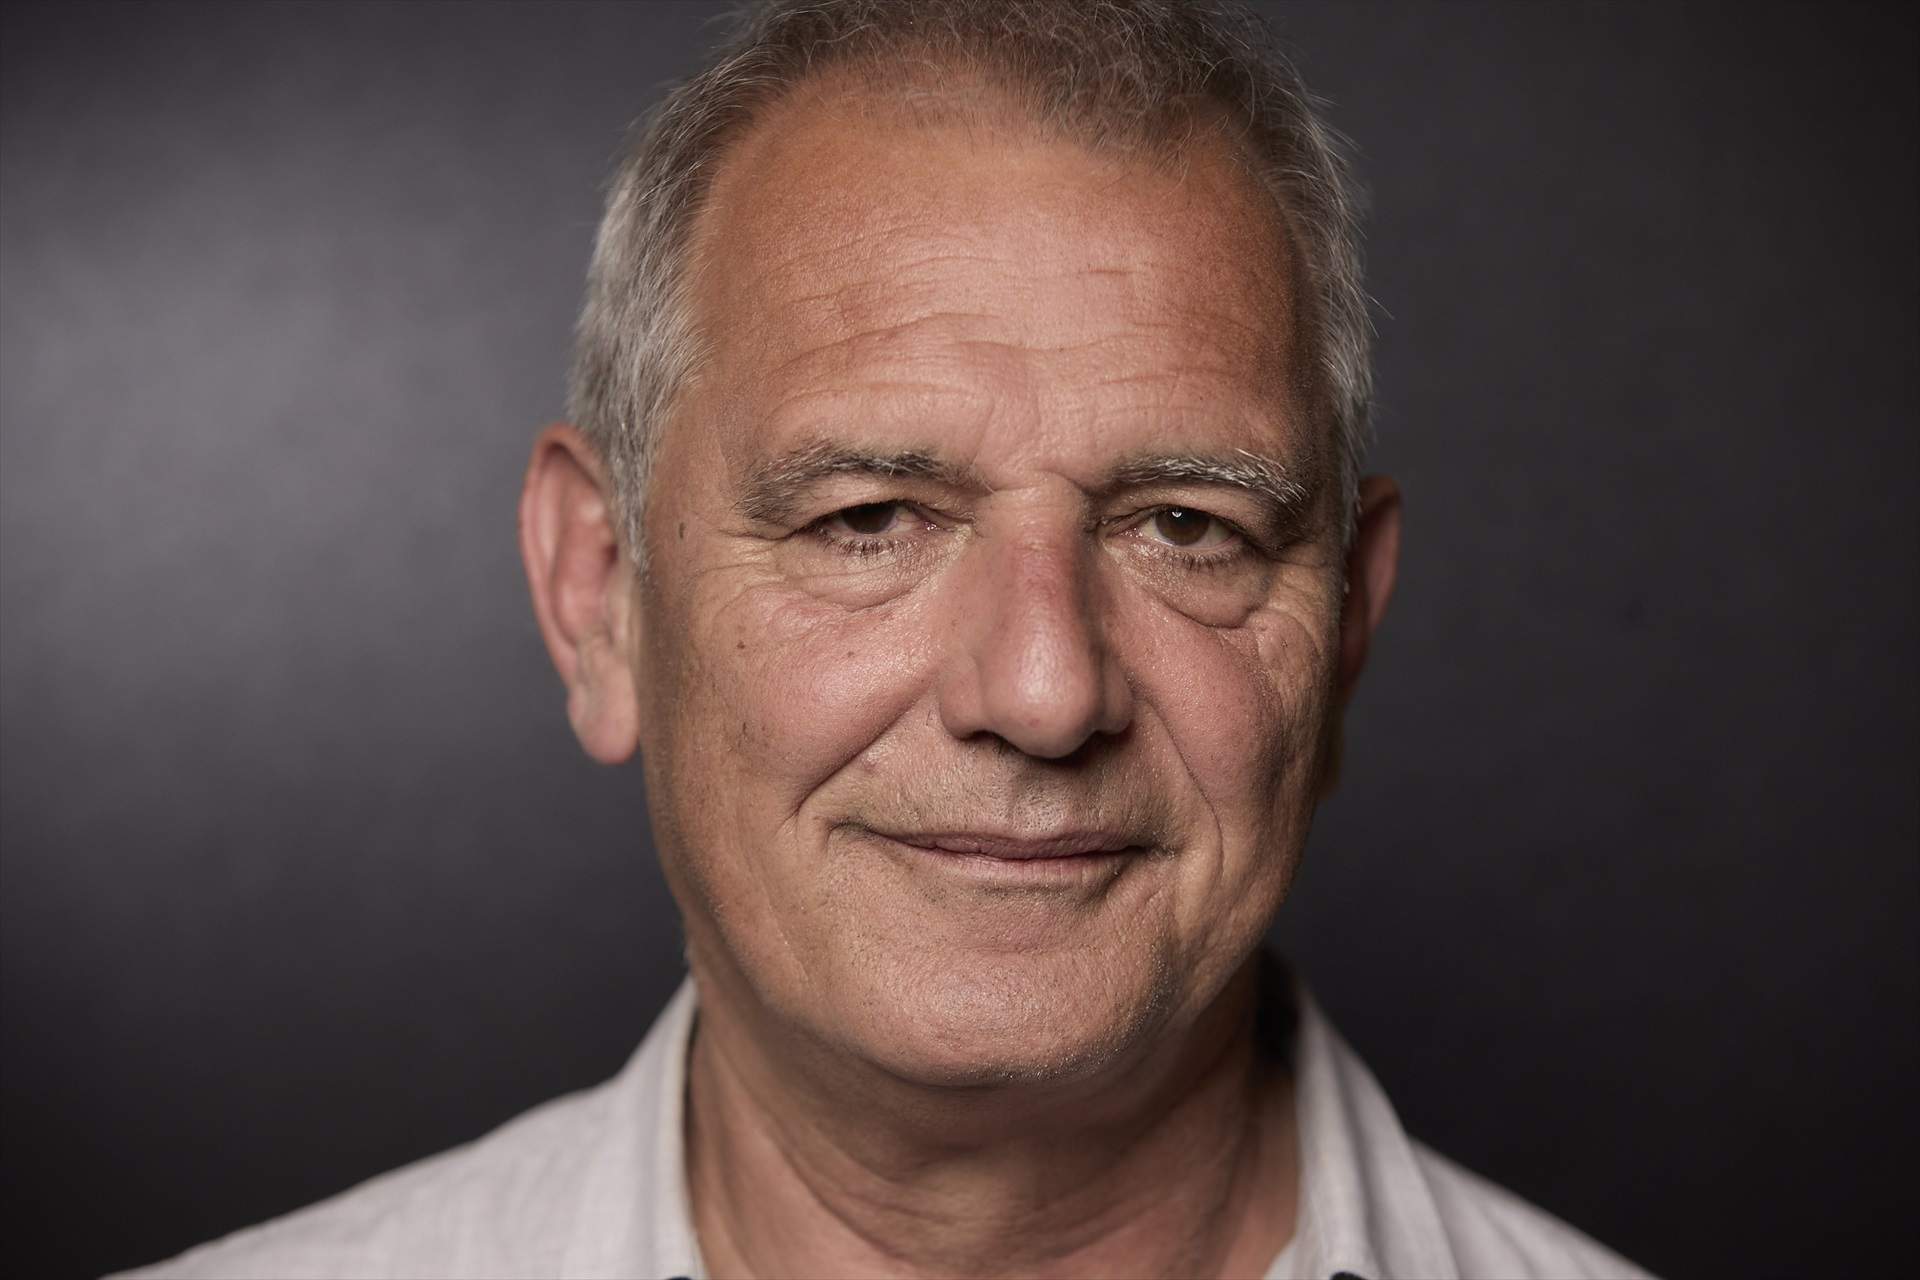 Laurent Cantet, director de cinema guanyador de la Palma d'Or el 2008, mor als 63 anys